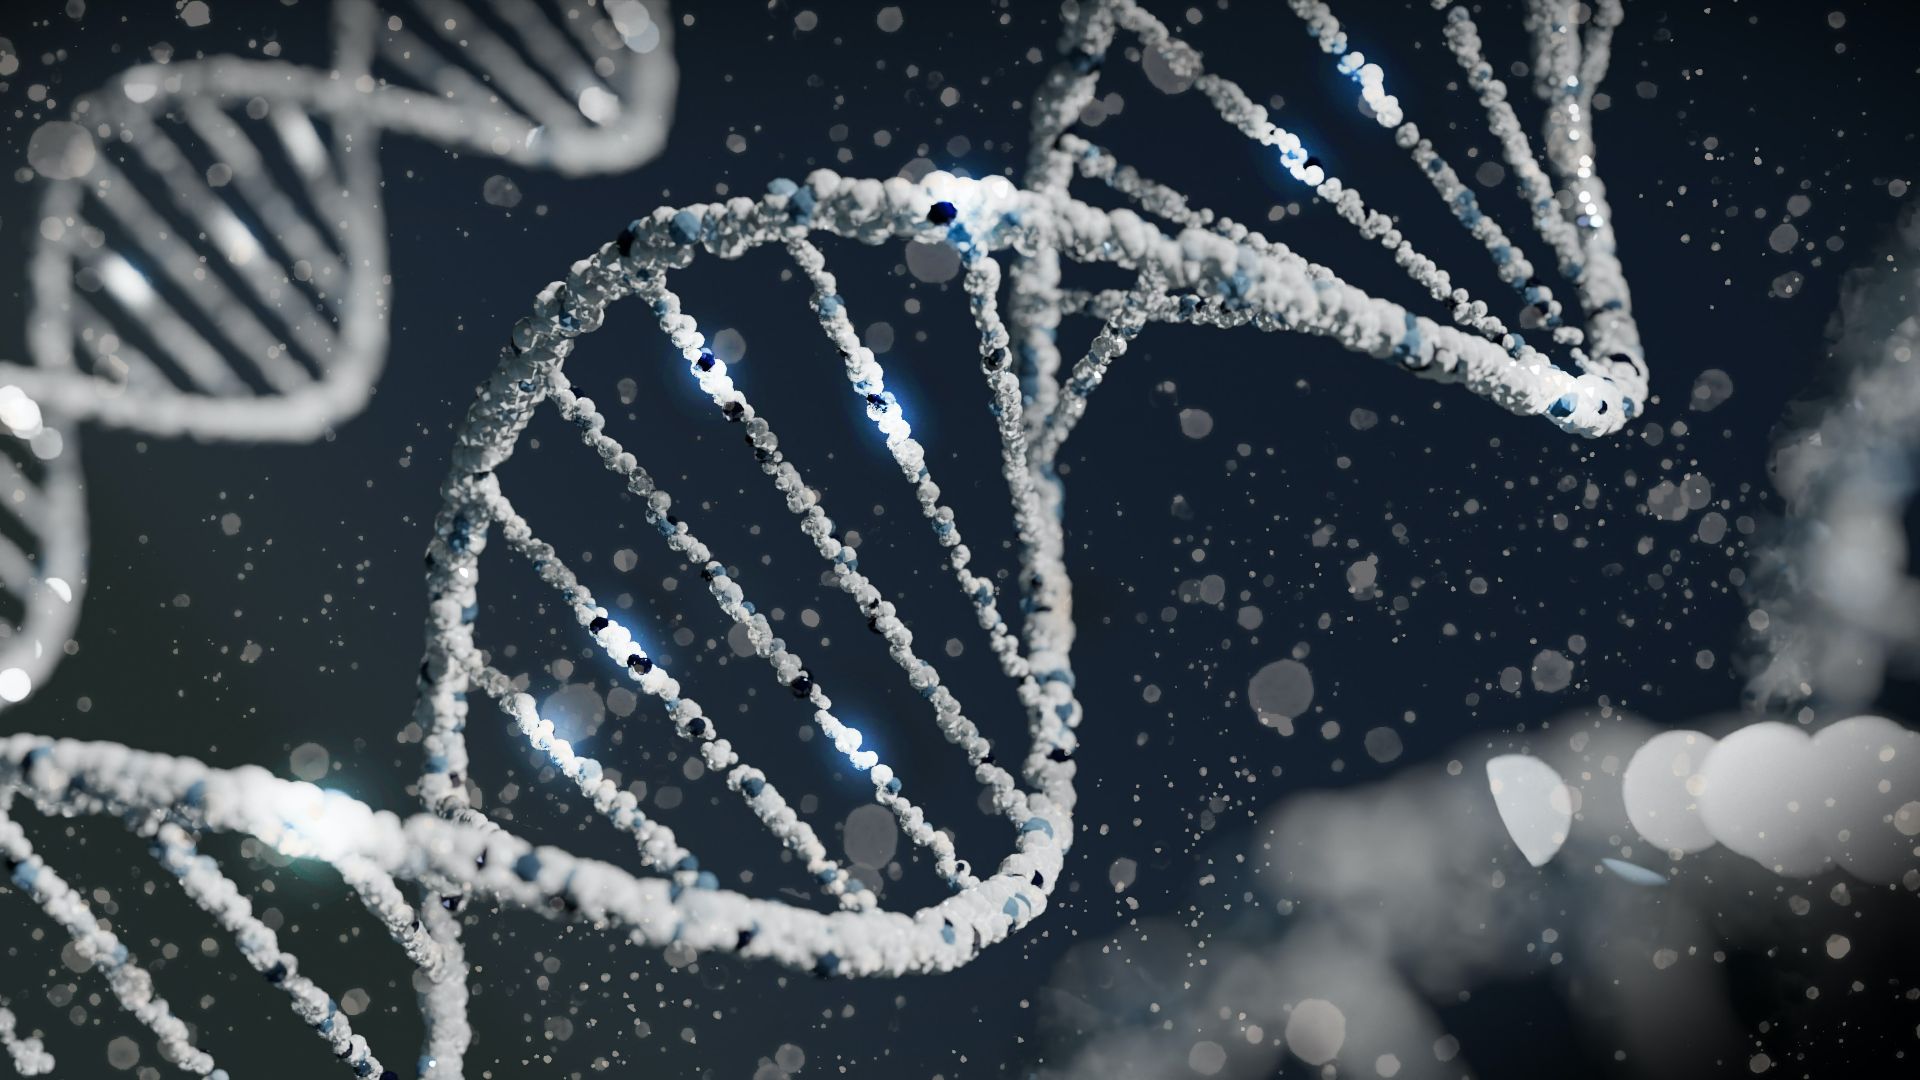 SUA:  un studiu a descoperit 275 de milioane de variante genetice noi